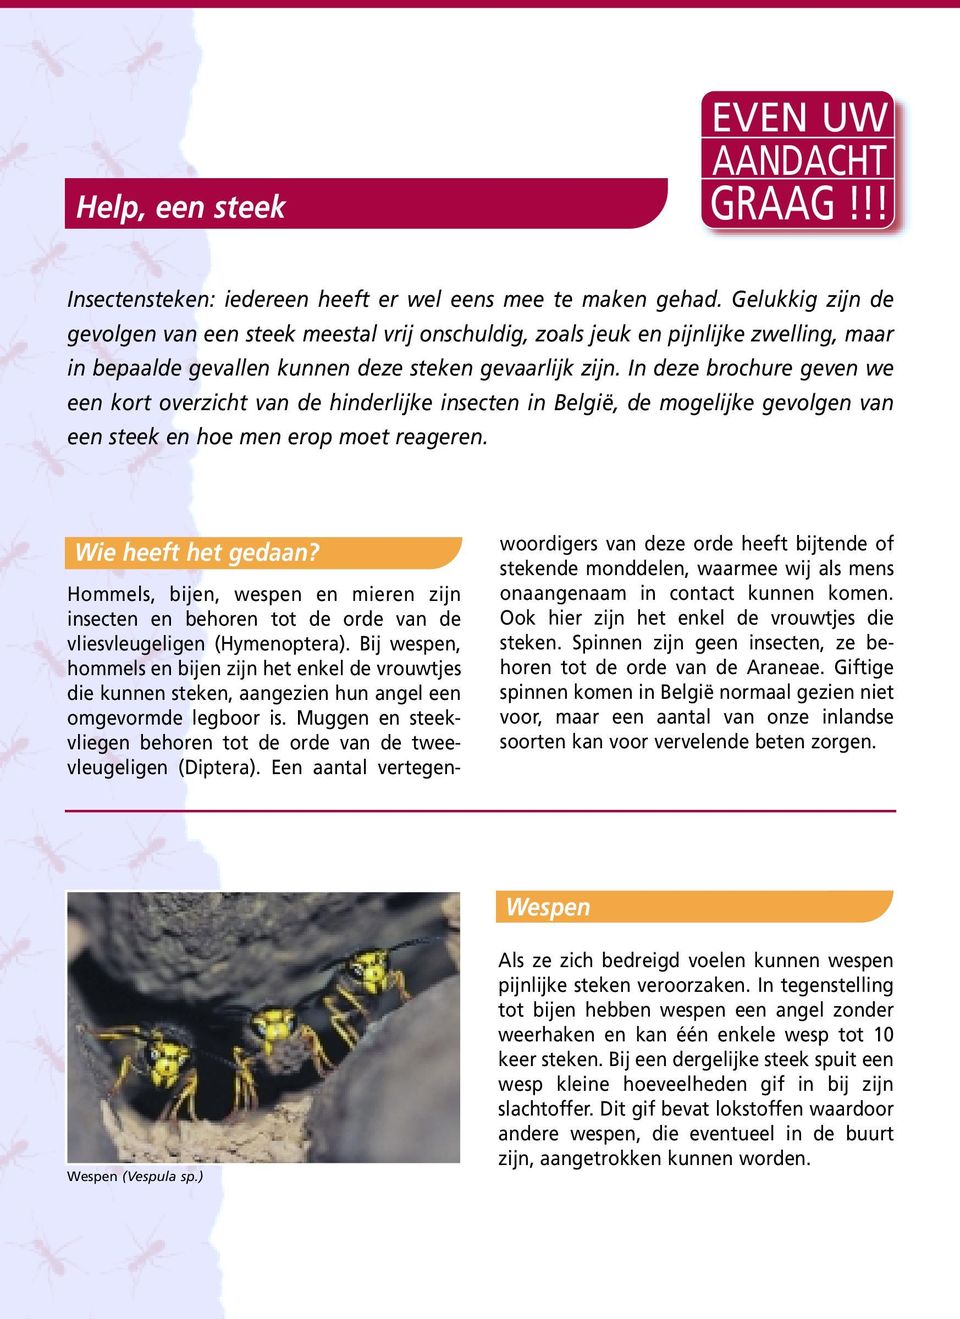 In deze brochure geven we een kort overzicht van de hinderlijke insecten in België, de mogelijke gevolgen van een steek en hoe men erop moet reageren. Wie heeft het gedaan?